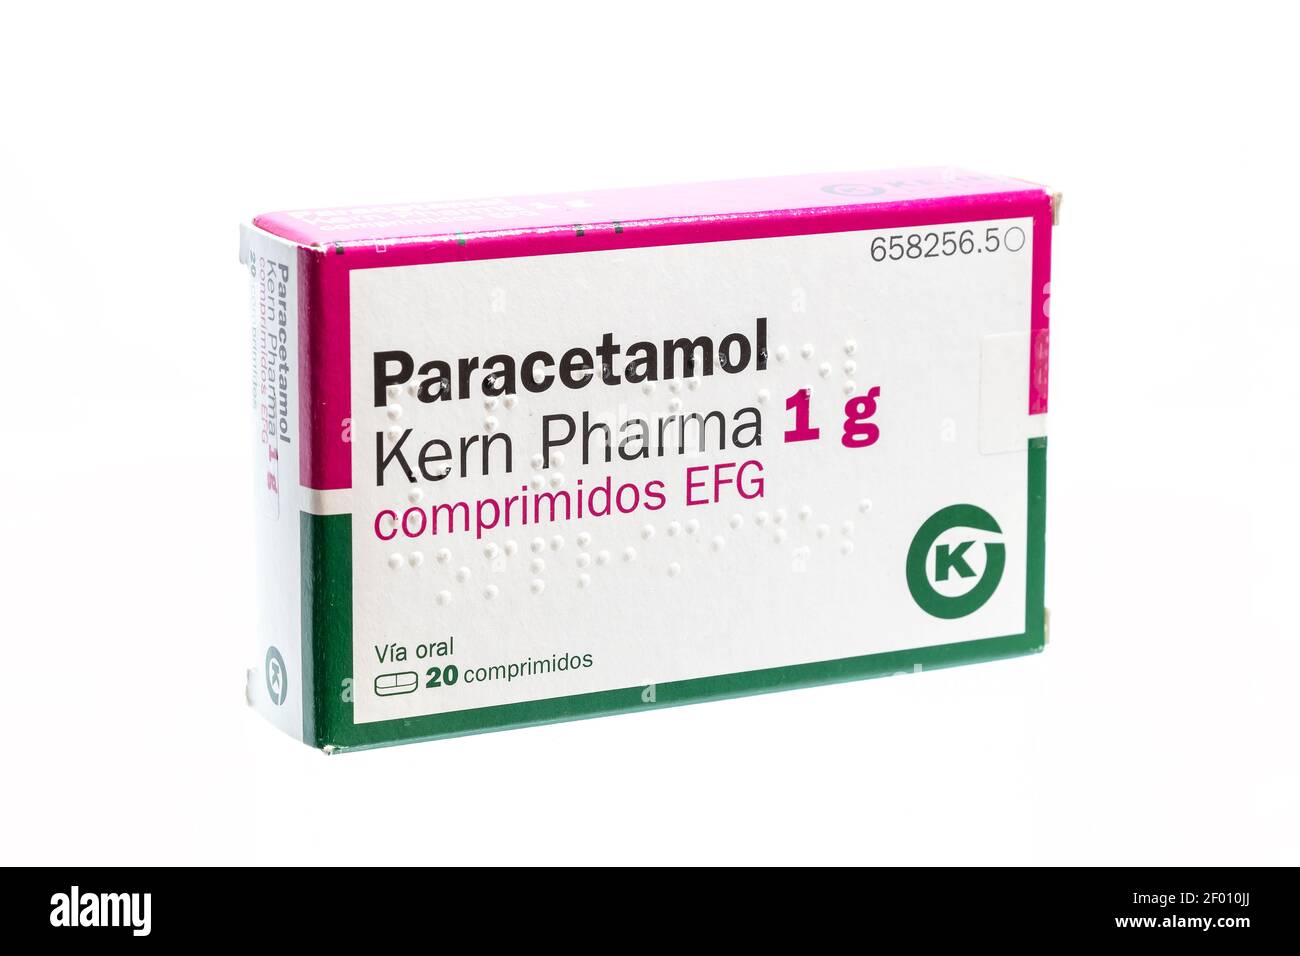 Huelva, Espagne - 6 mars 2021 : boîte espagnole de Paracetamol Kern Pharma. Aussi connu sous le nom d'acétaminophène, est un médicament utilisé pour traiter la douleur et la fièvre.il est Banque D'Images